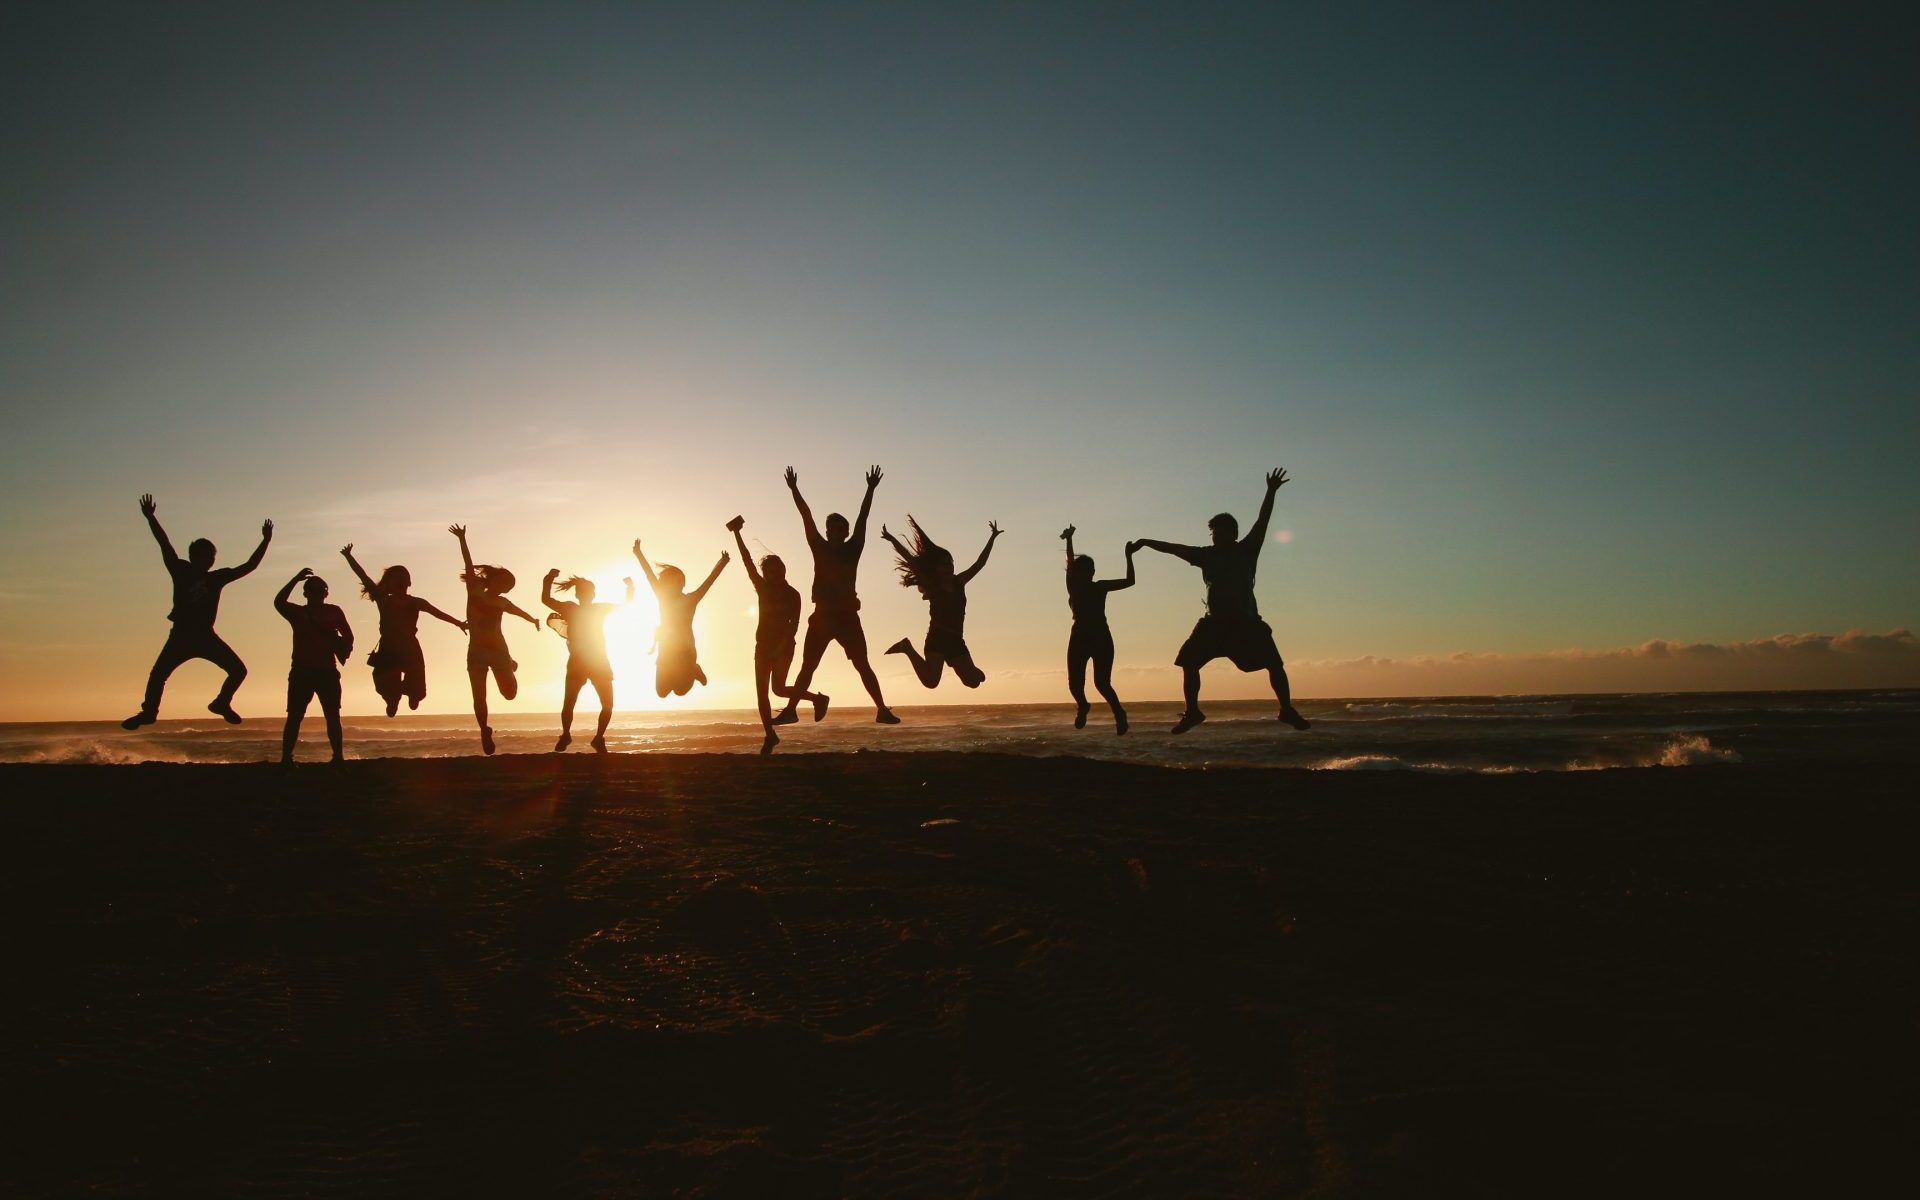 groupe de personnes qui sautent sur la plage au soleil couchant